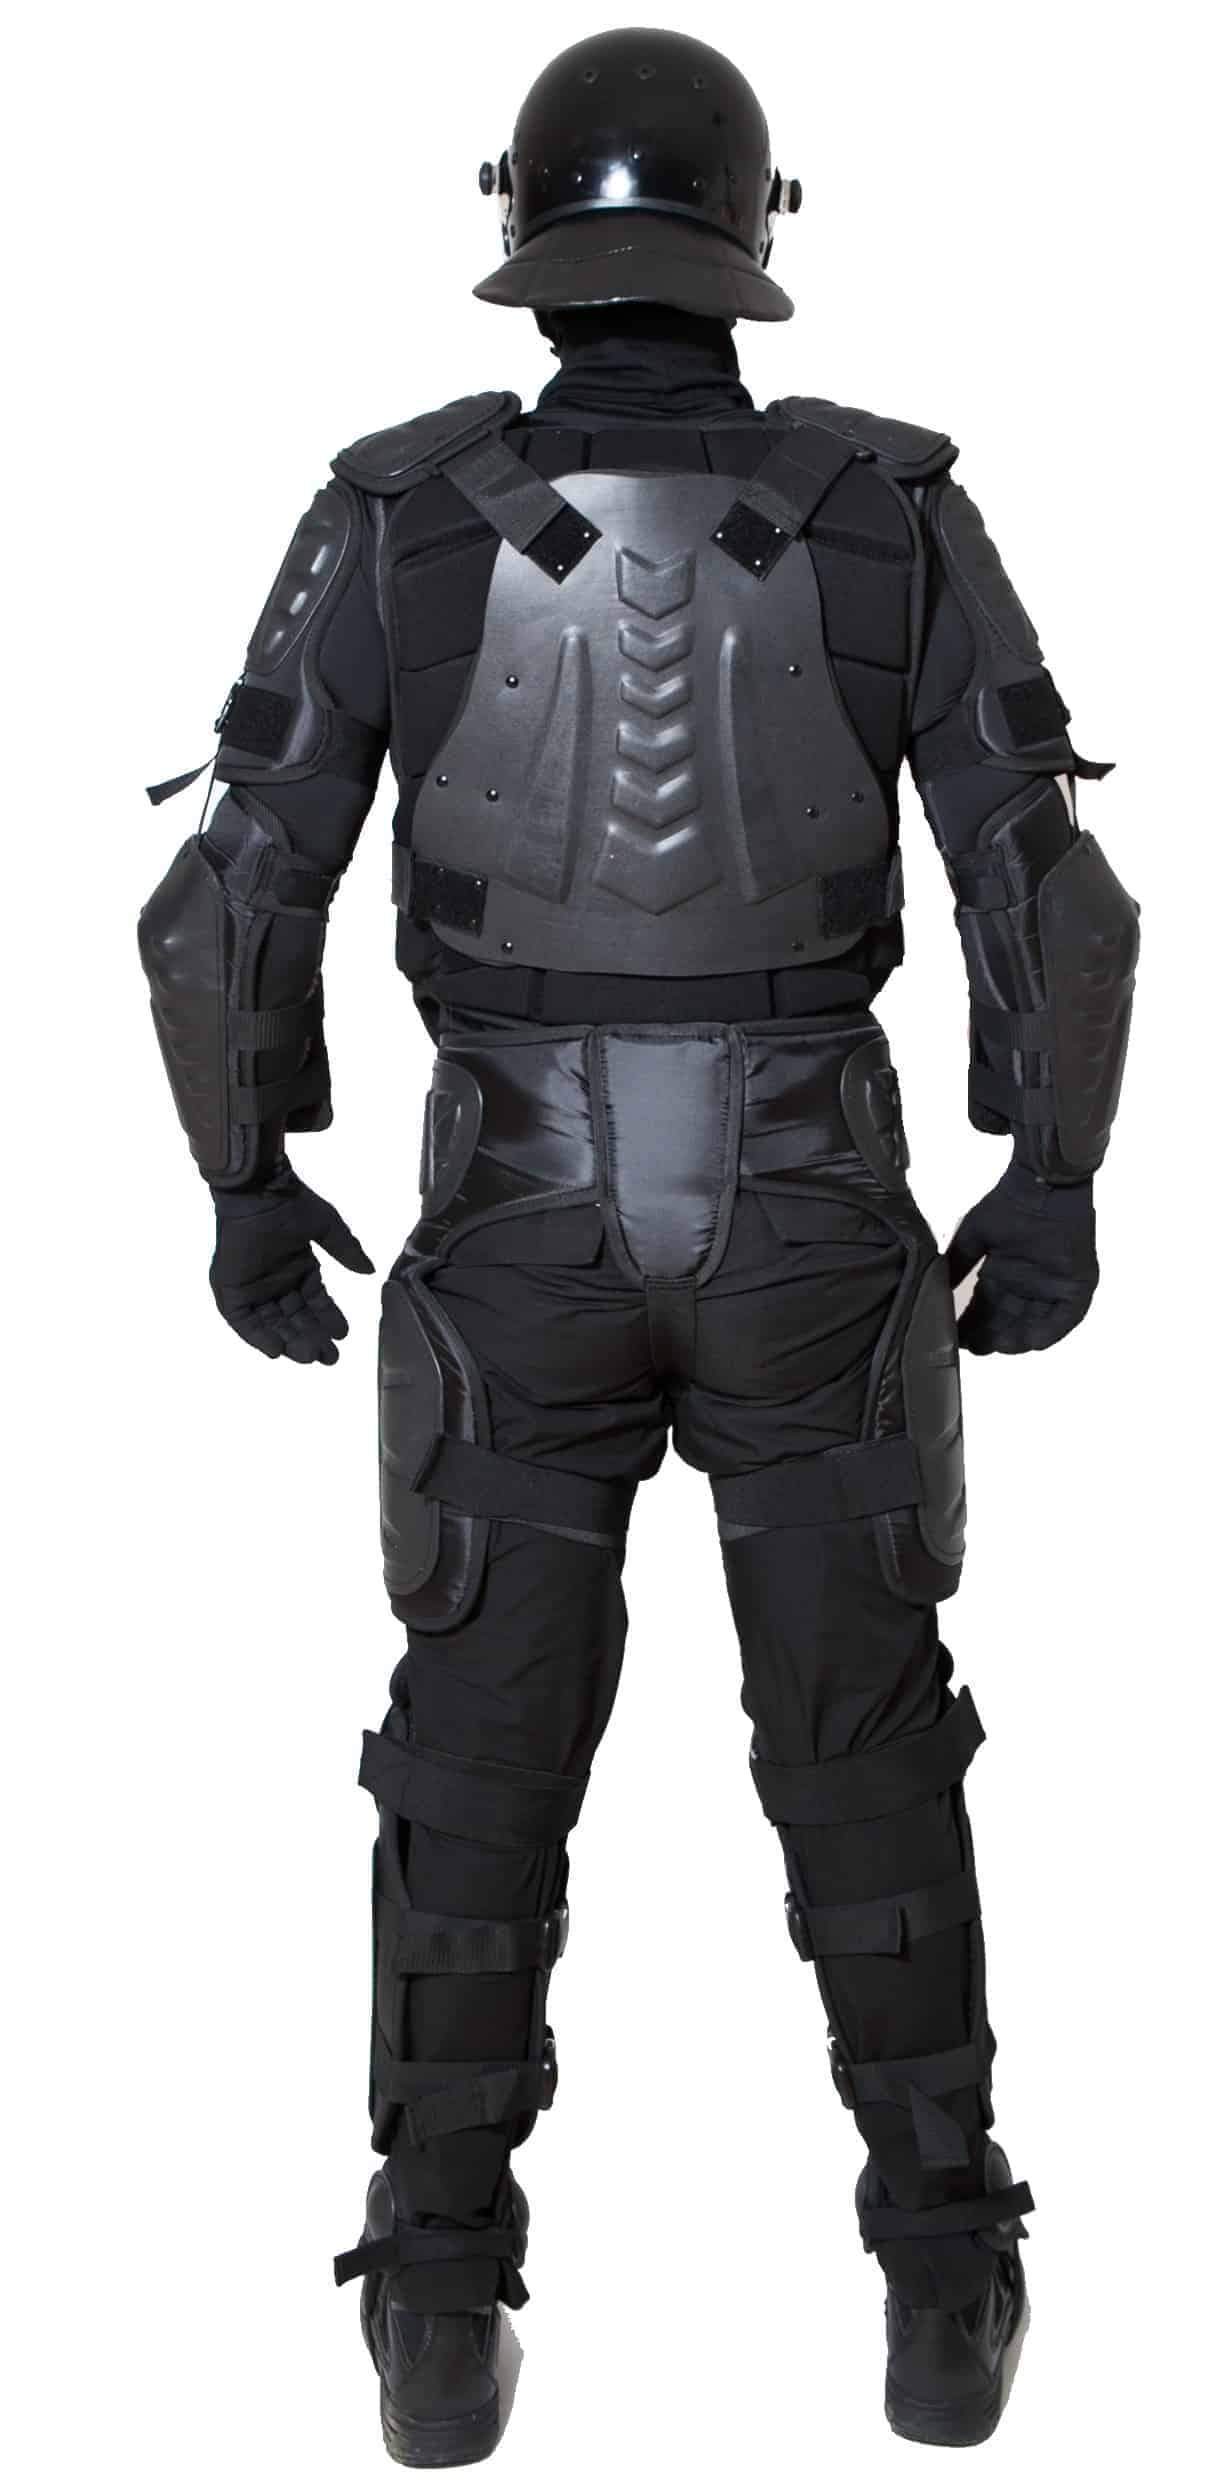 HWI Gear ED100 Elite Defender Riot Suit Protective Gear HWI Gear Tactical Gear Supplier Tactical Distributors Australia